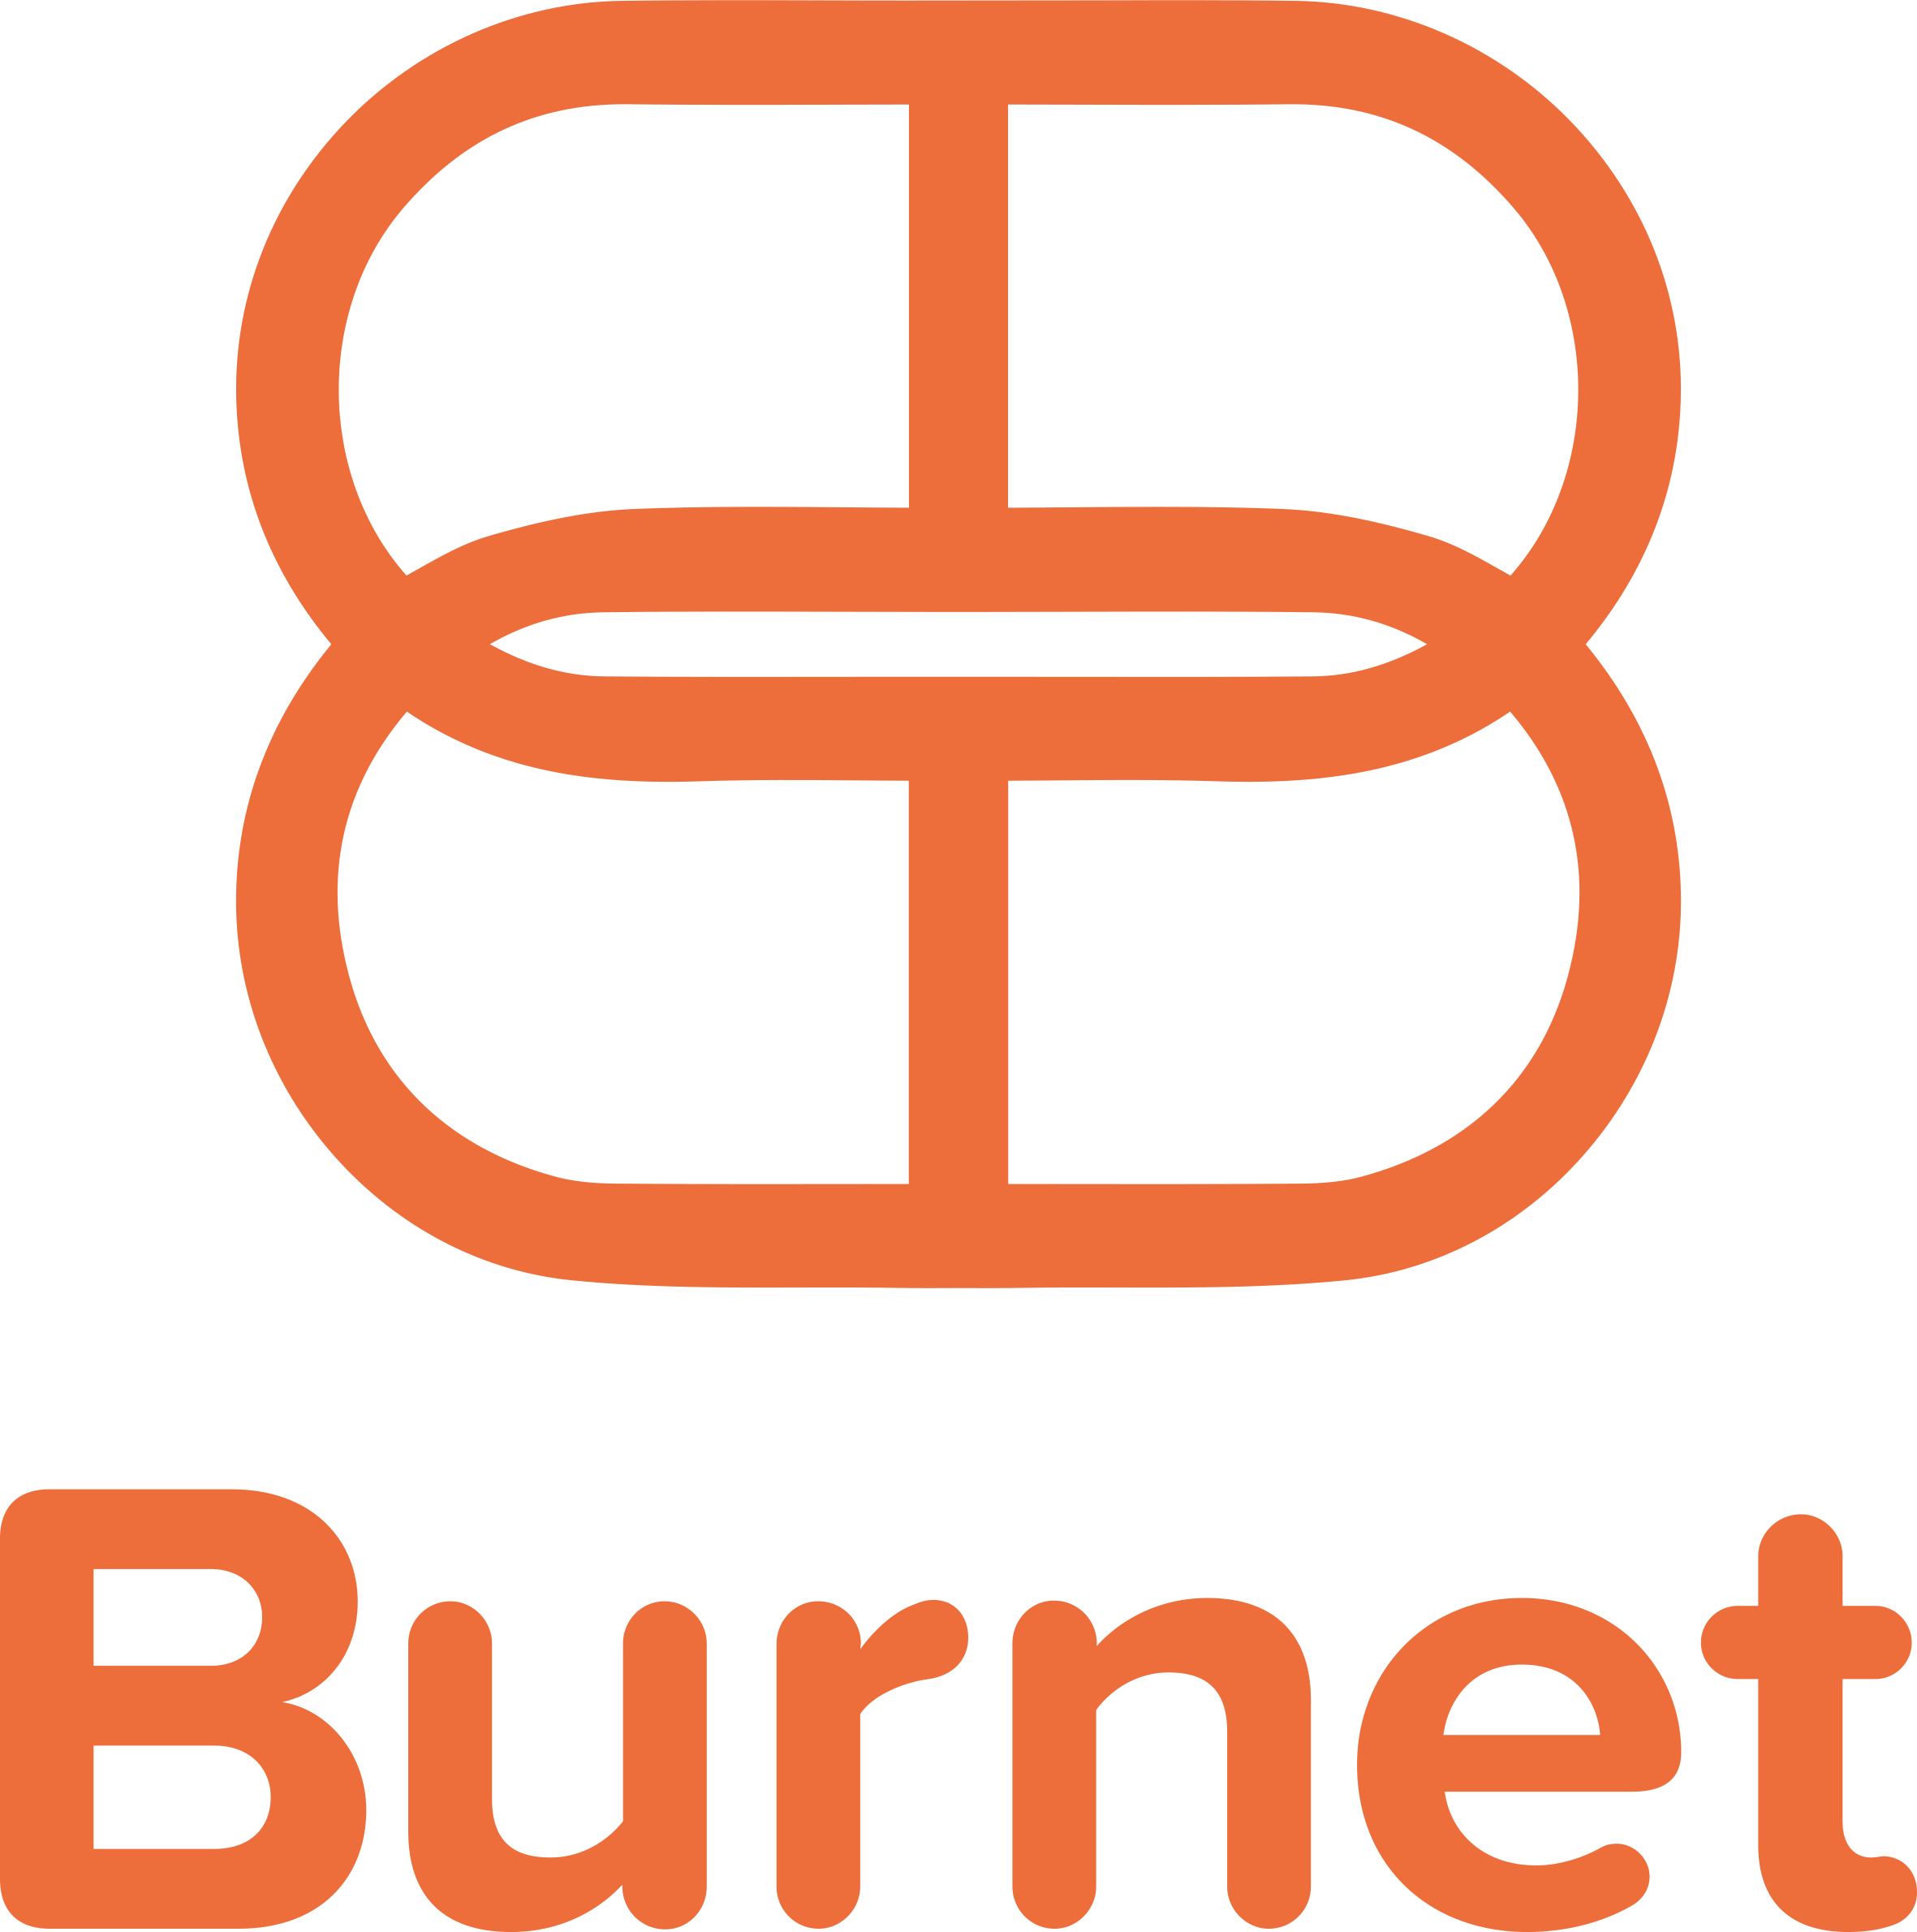 Burnet Institute (Advertisement)